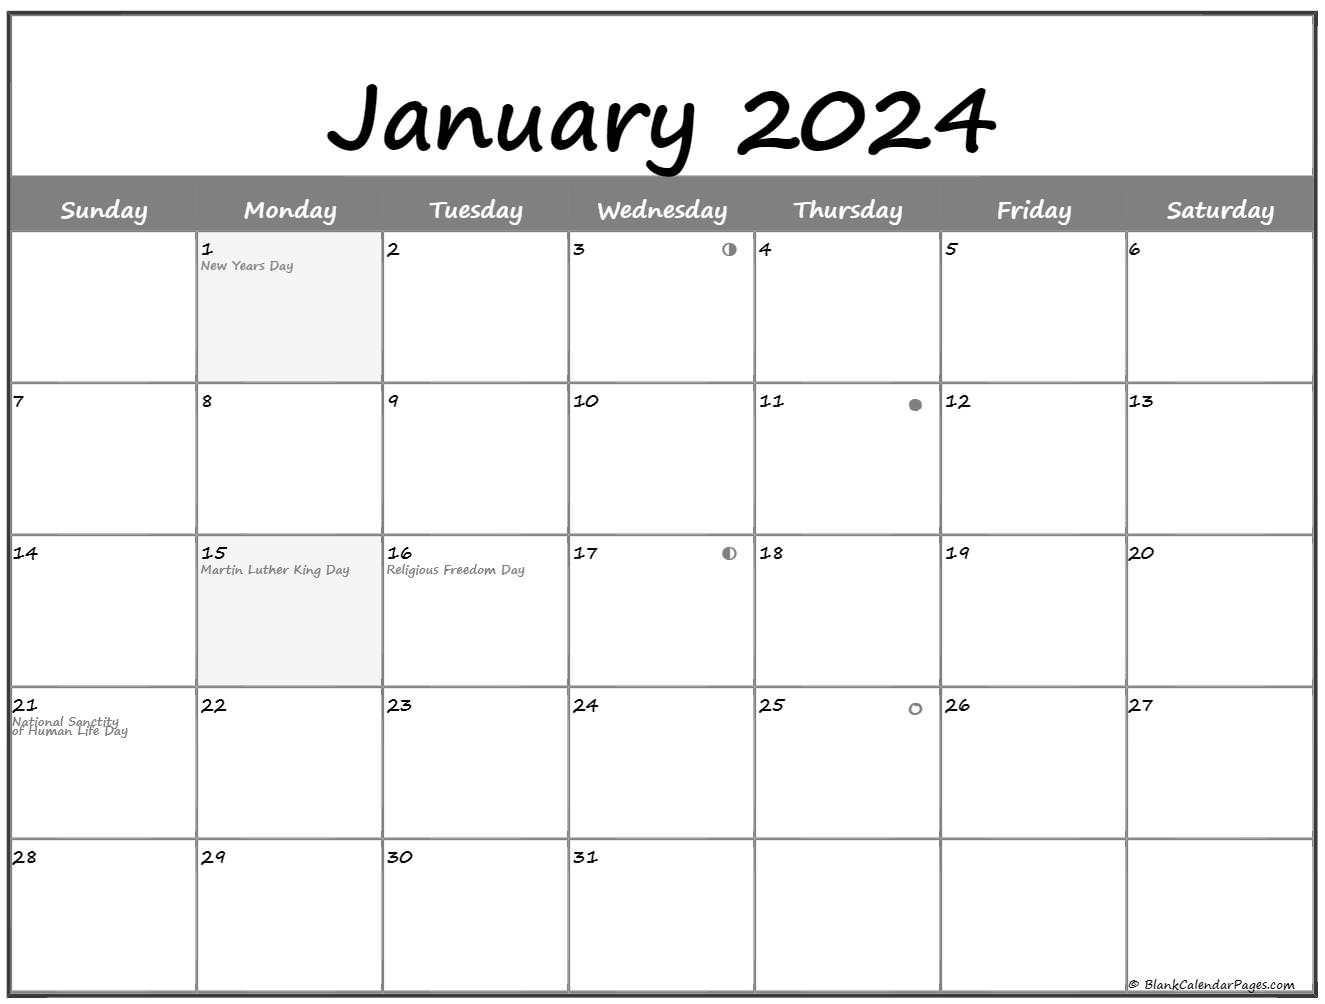 January 2024 Lunar Calendar Moon Phase Calendar